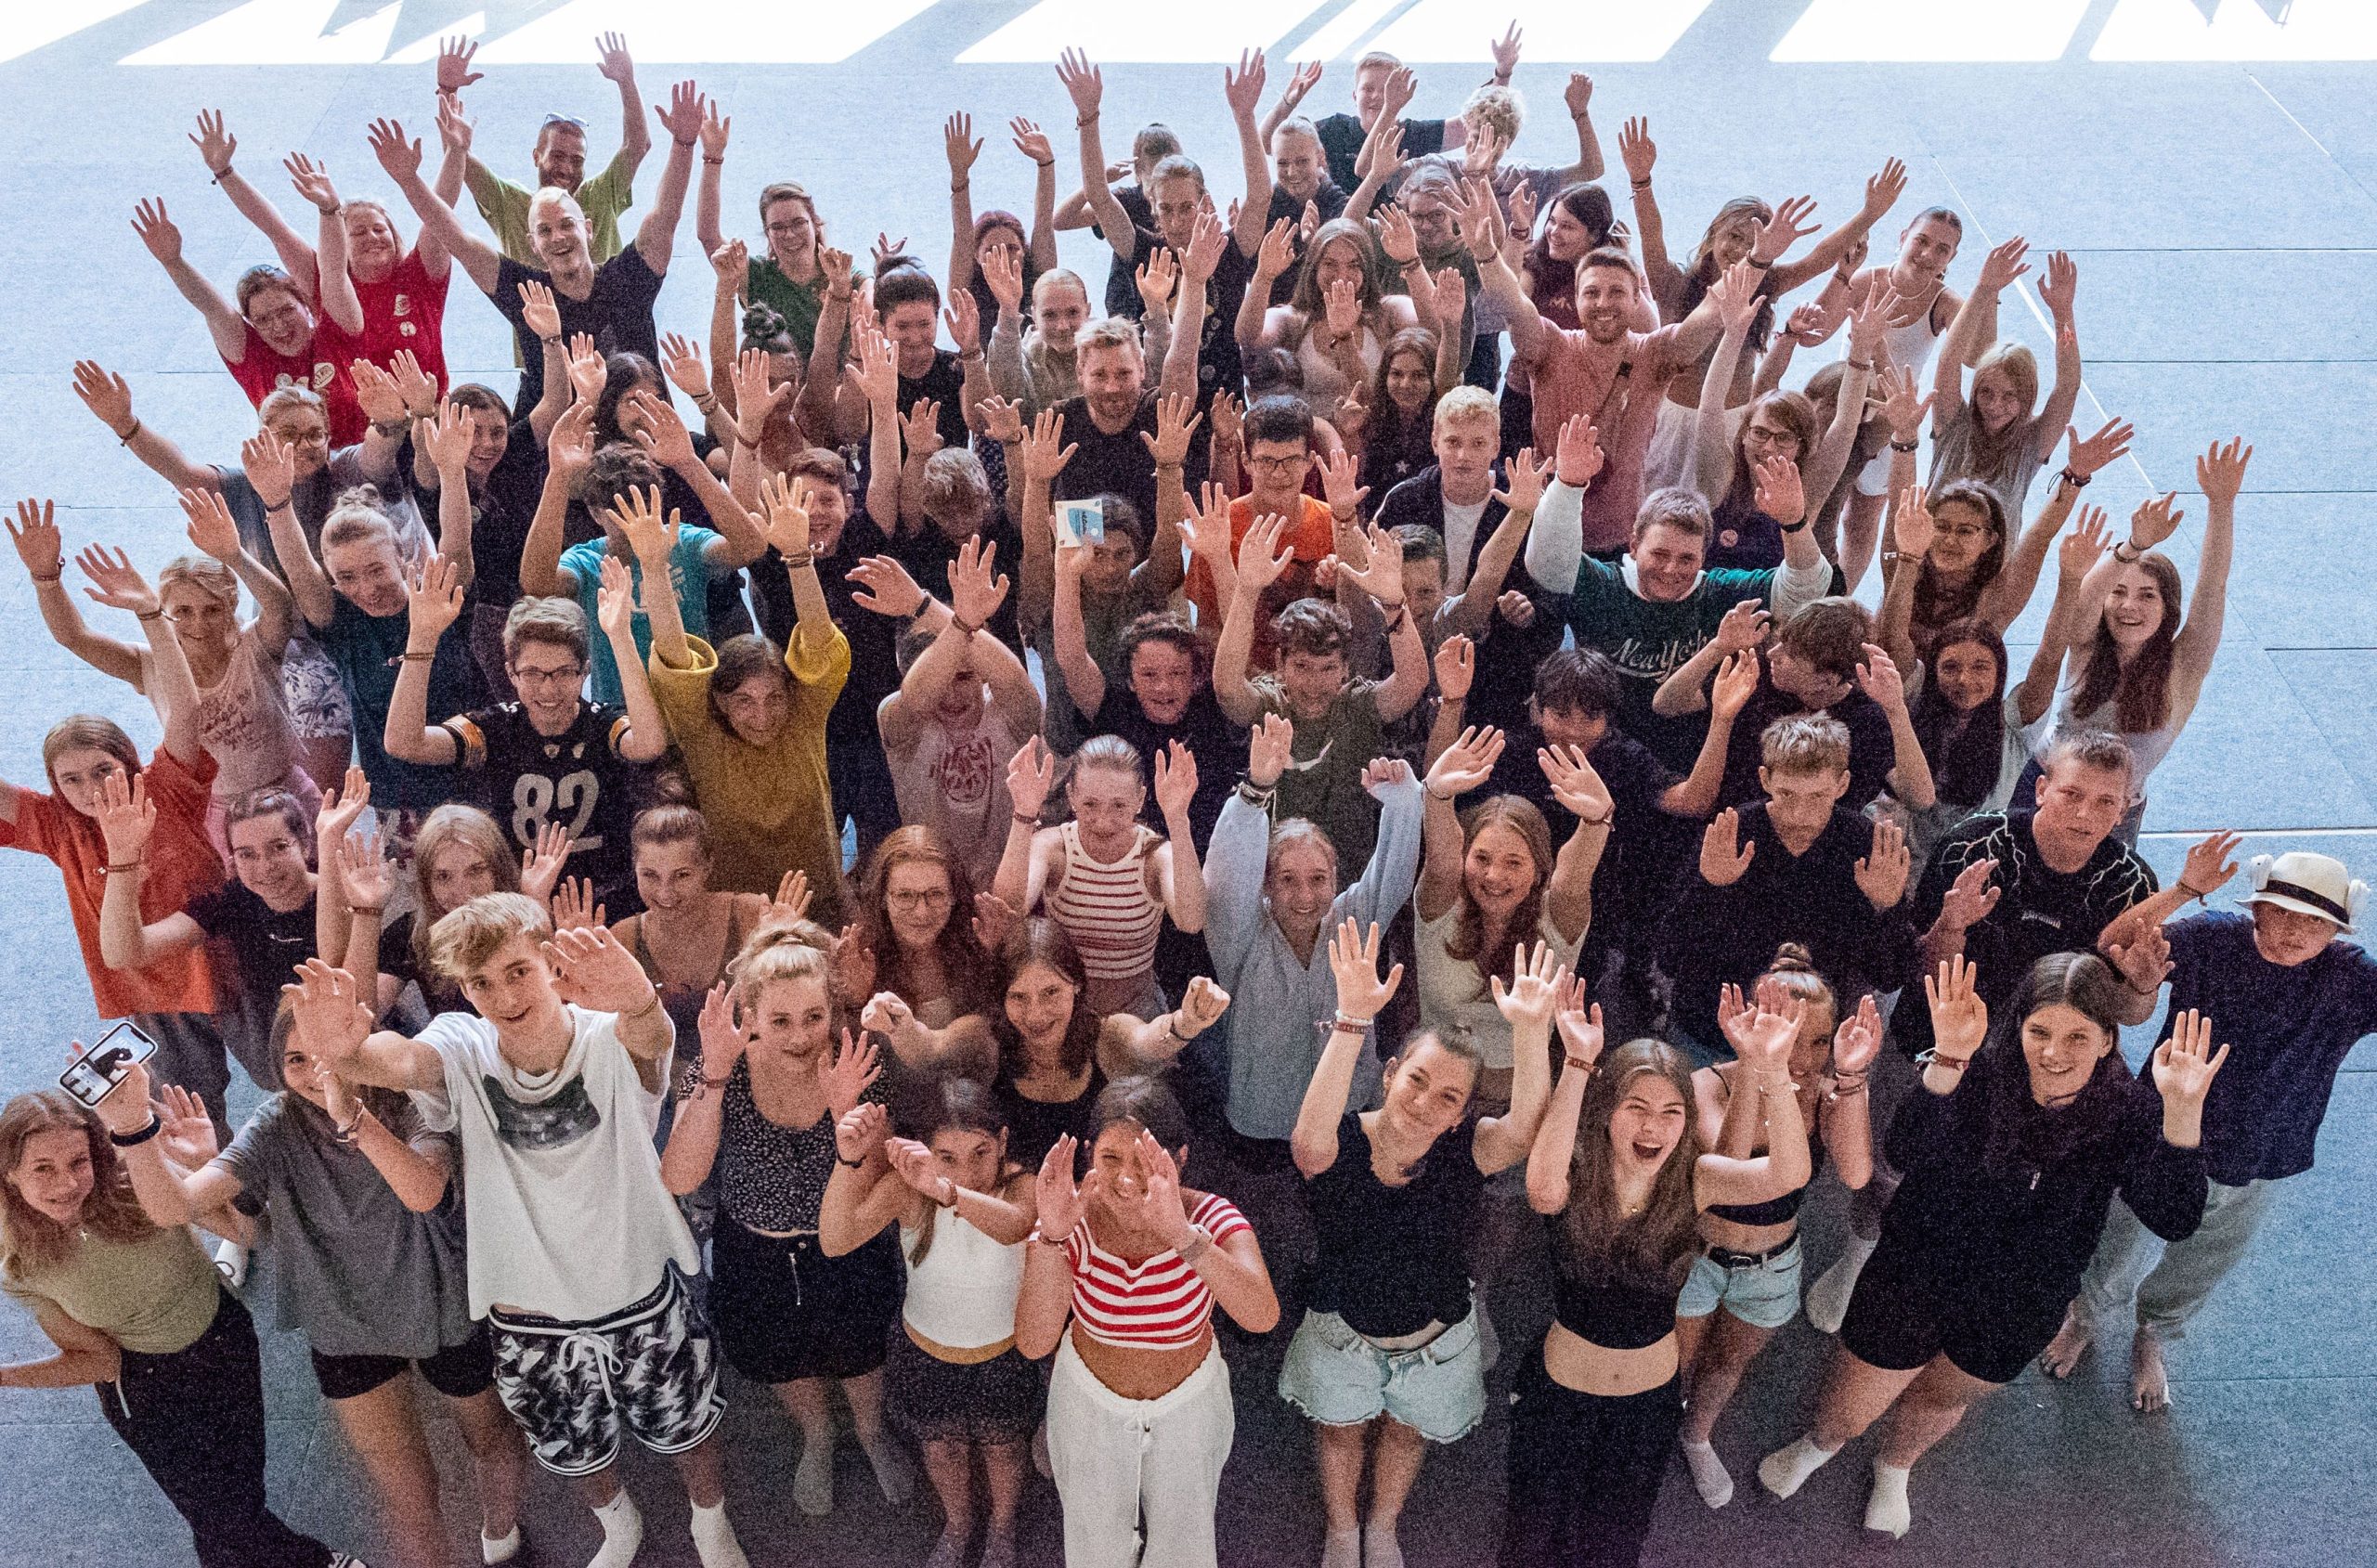 Rund 70 Jugendliche aus dem Landkreis Rosenheim trafen sich zum Ideenaustausch. Fotos: Moritz Beck